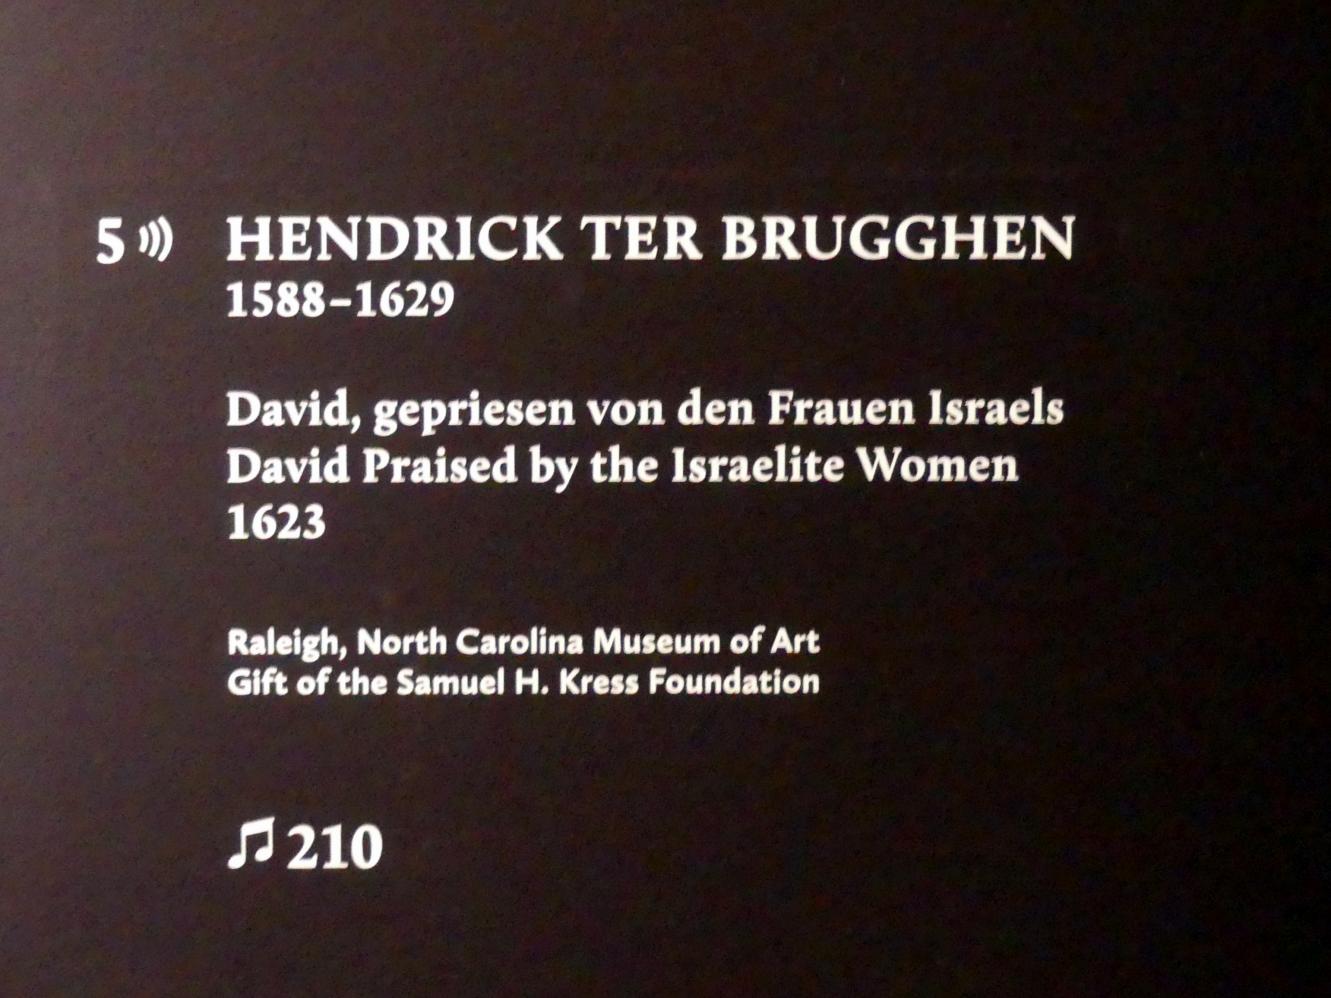 Hendrick ter Brugghen (1616–1629), David, gepriesen von den Frauen Israels, München, Alte Pinakothek, Ausstellung "Utrecht, Caravaggio und Europa" vom 17.04.-21.07.2019, Helden: David und Goliath, 1623, Bild 2/2